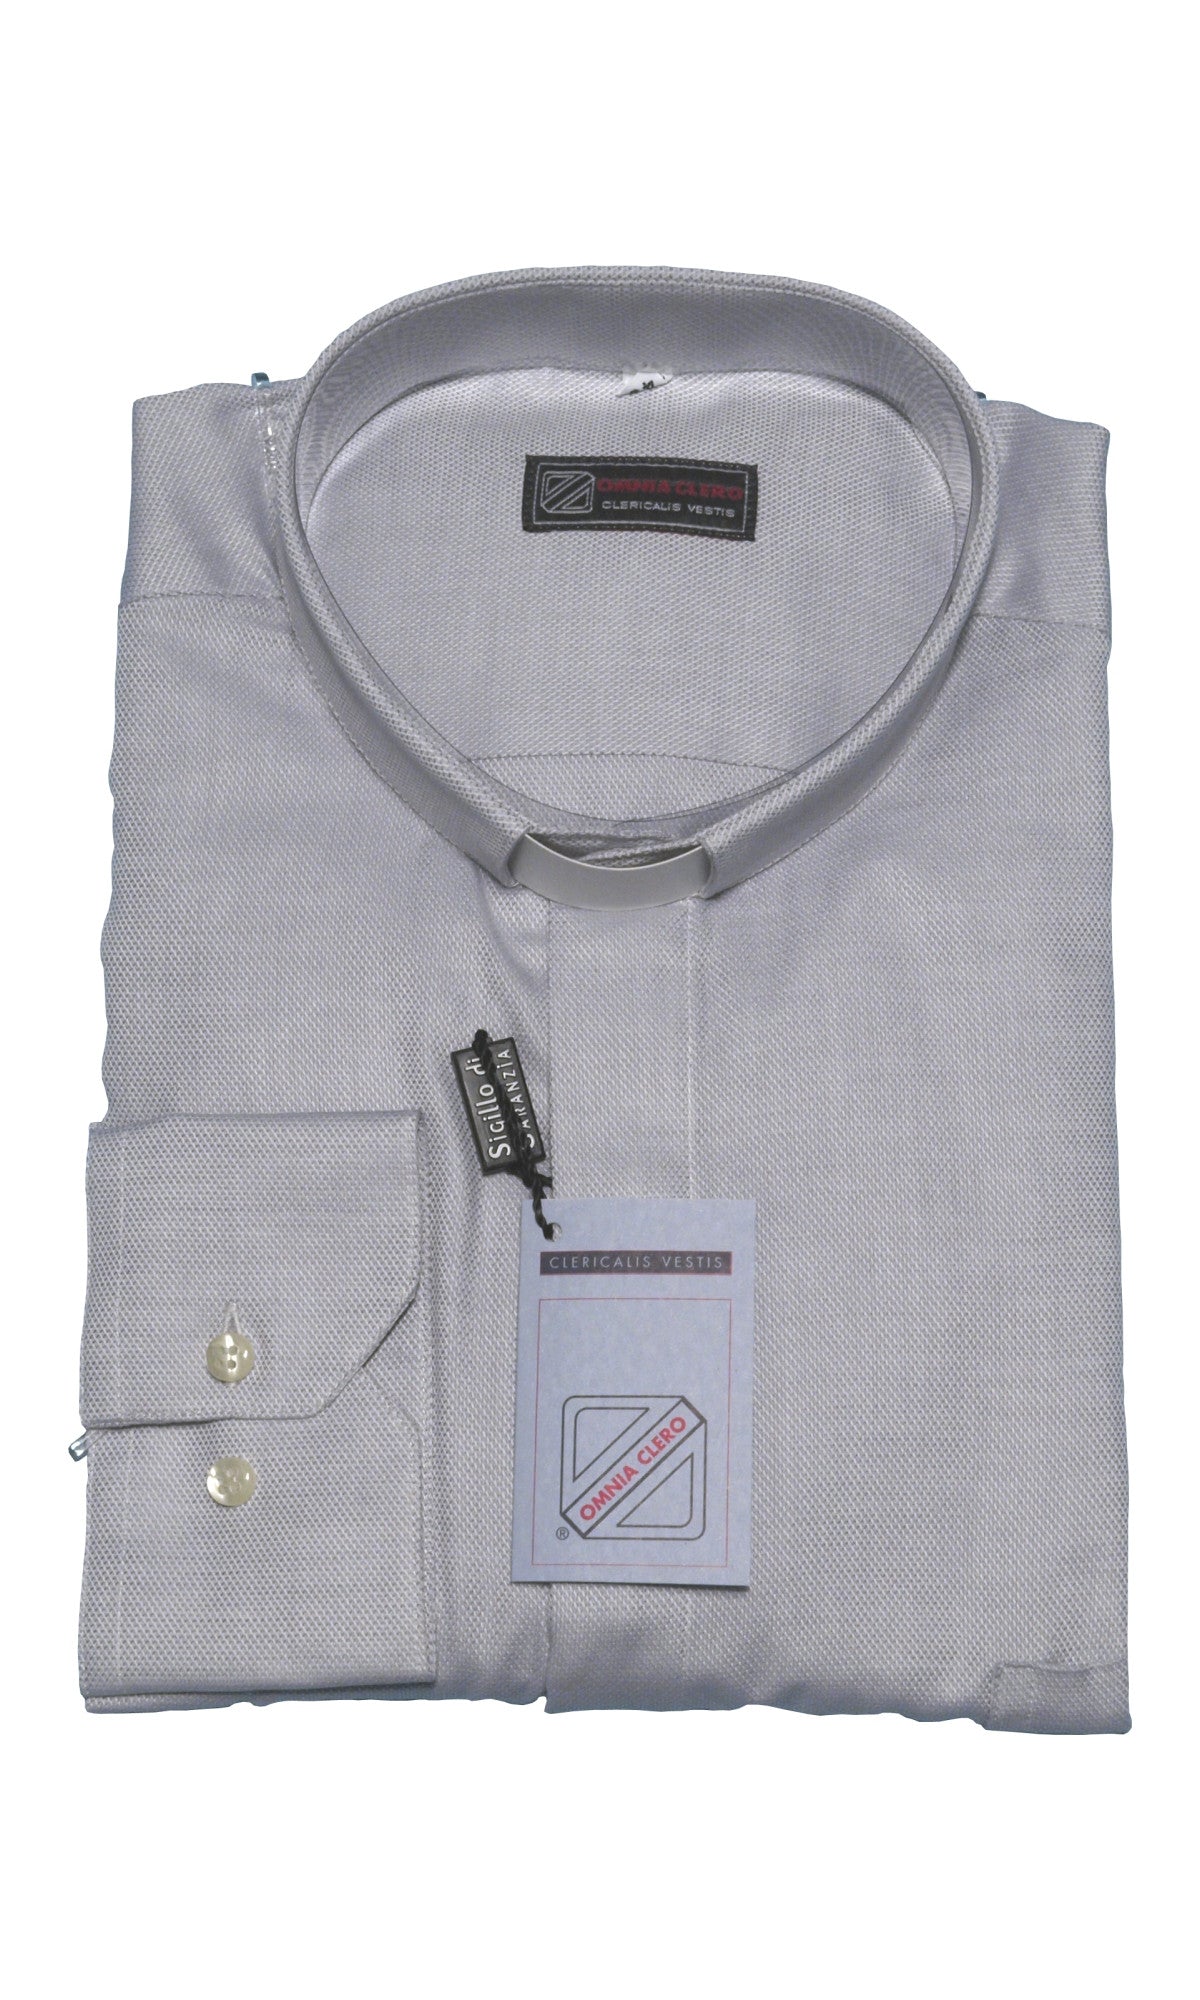 Camicia sacerdotale grigio chiaro piquet manica lunga puro cotone